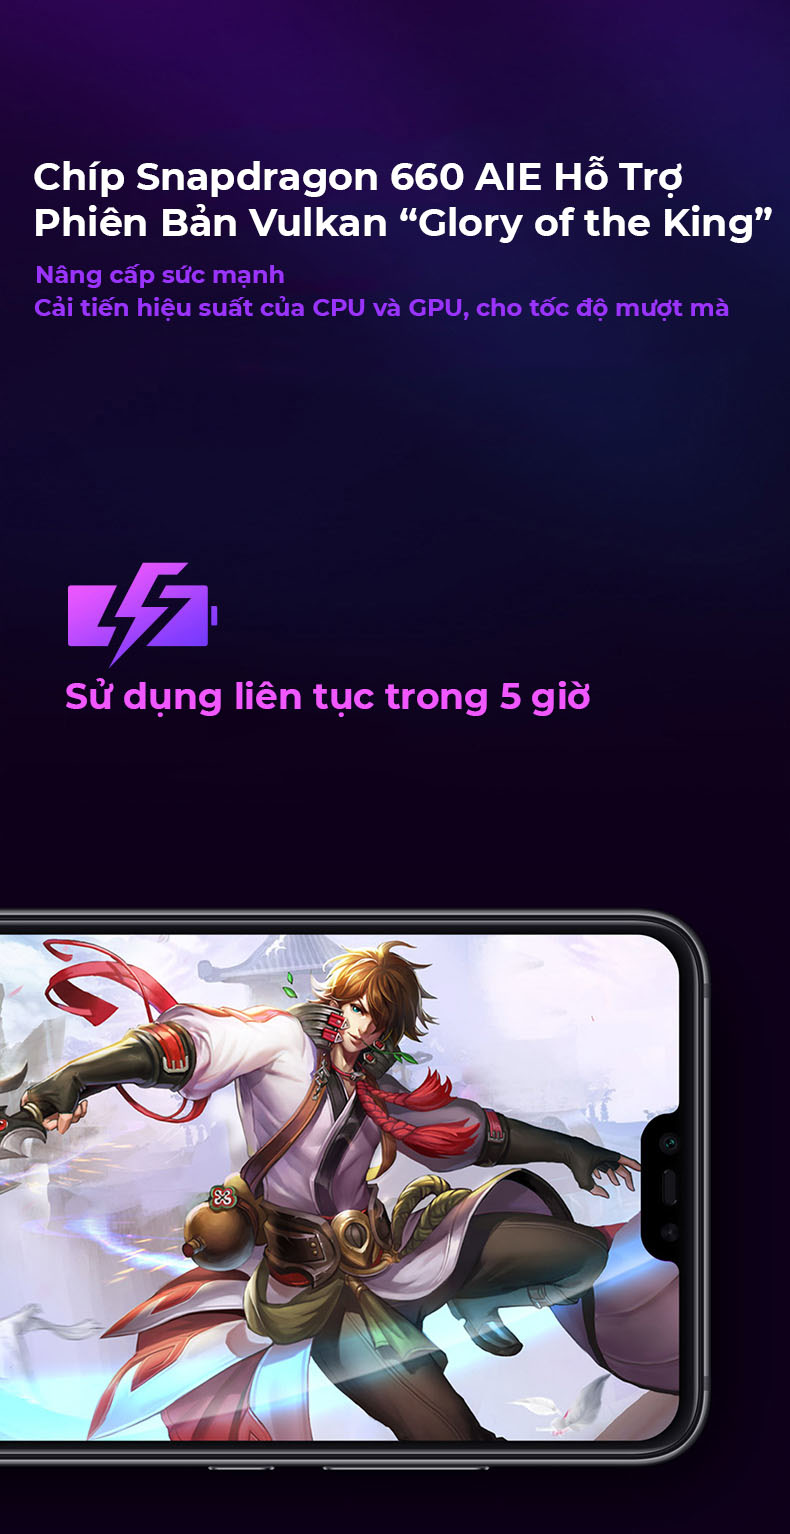 Xiaomi Mi 8 Youth Edition